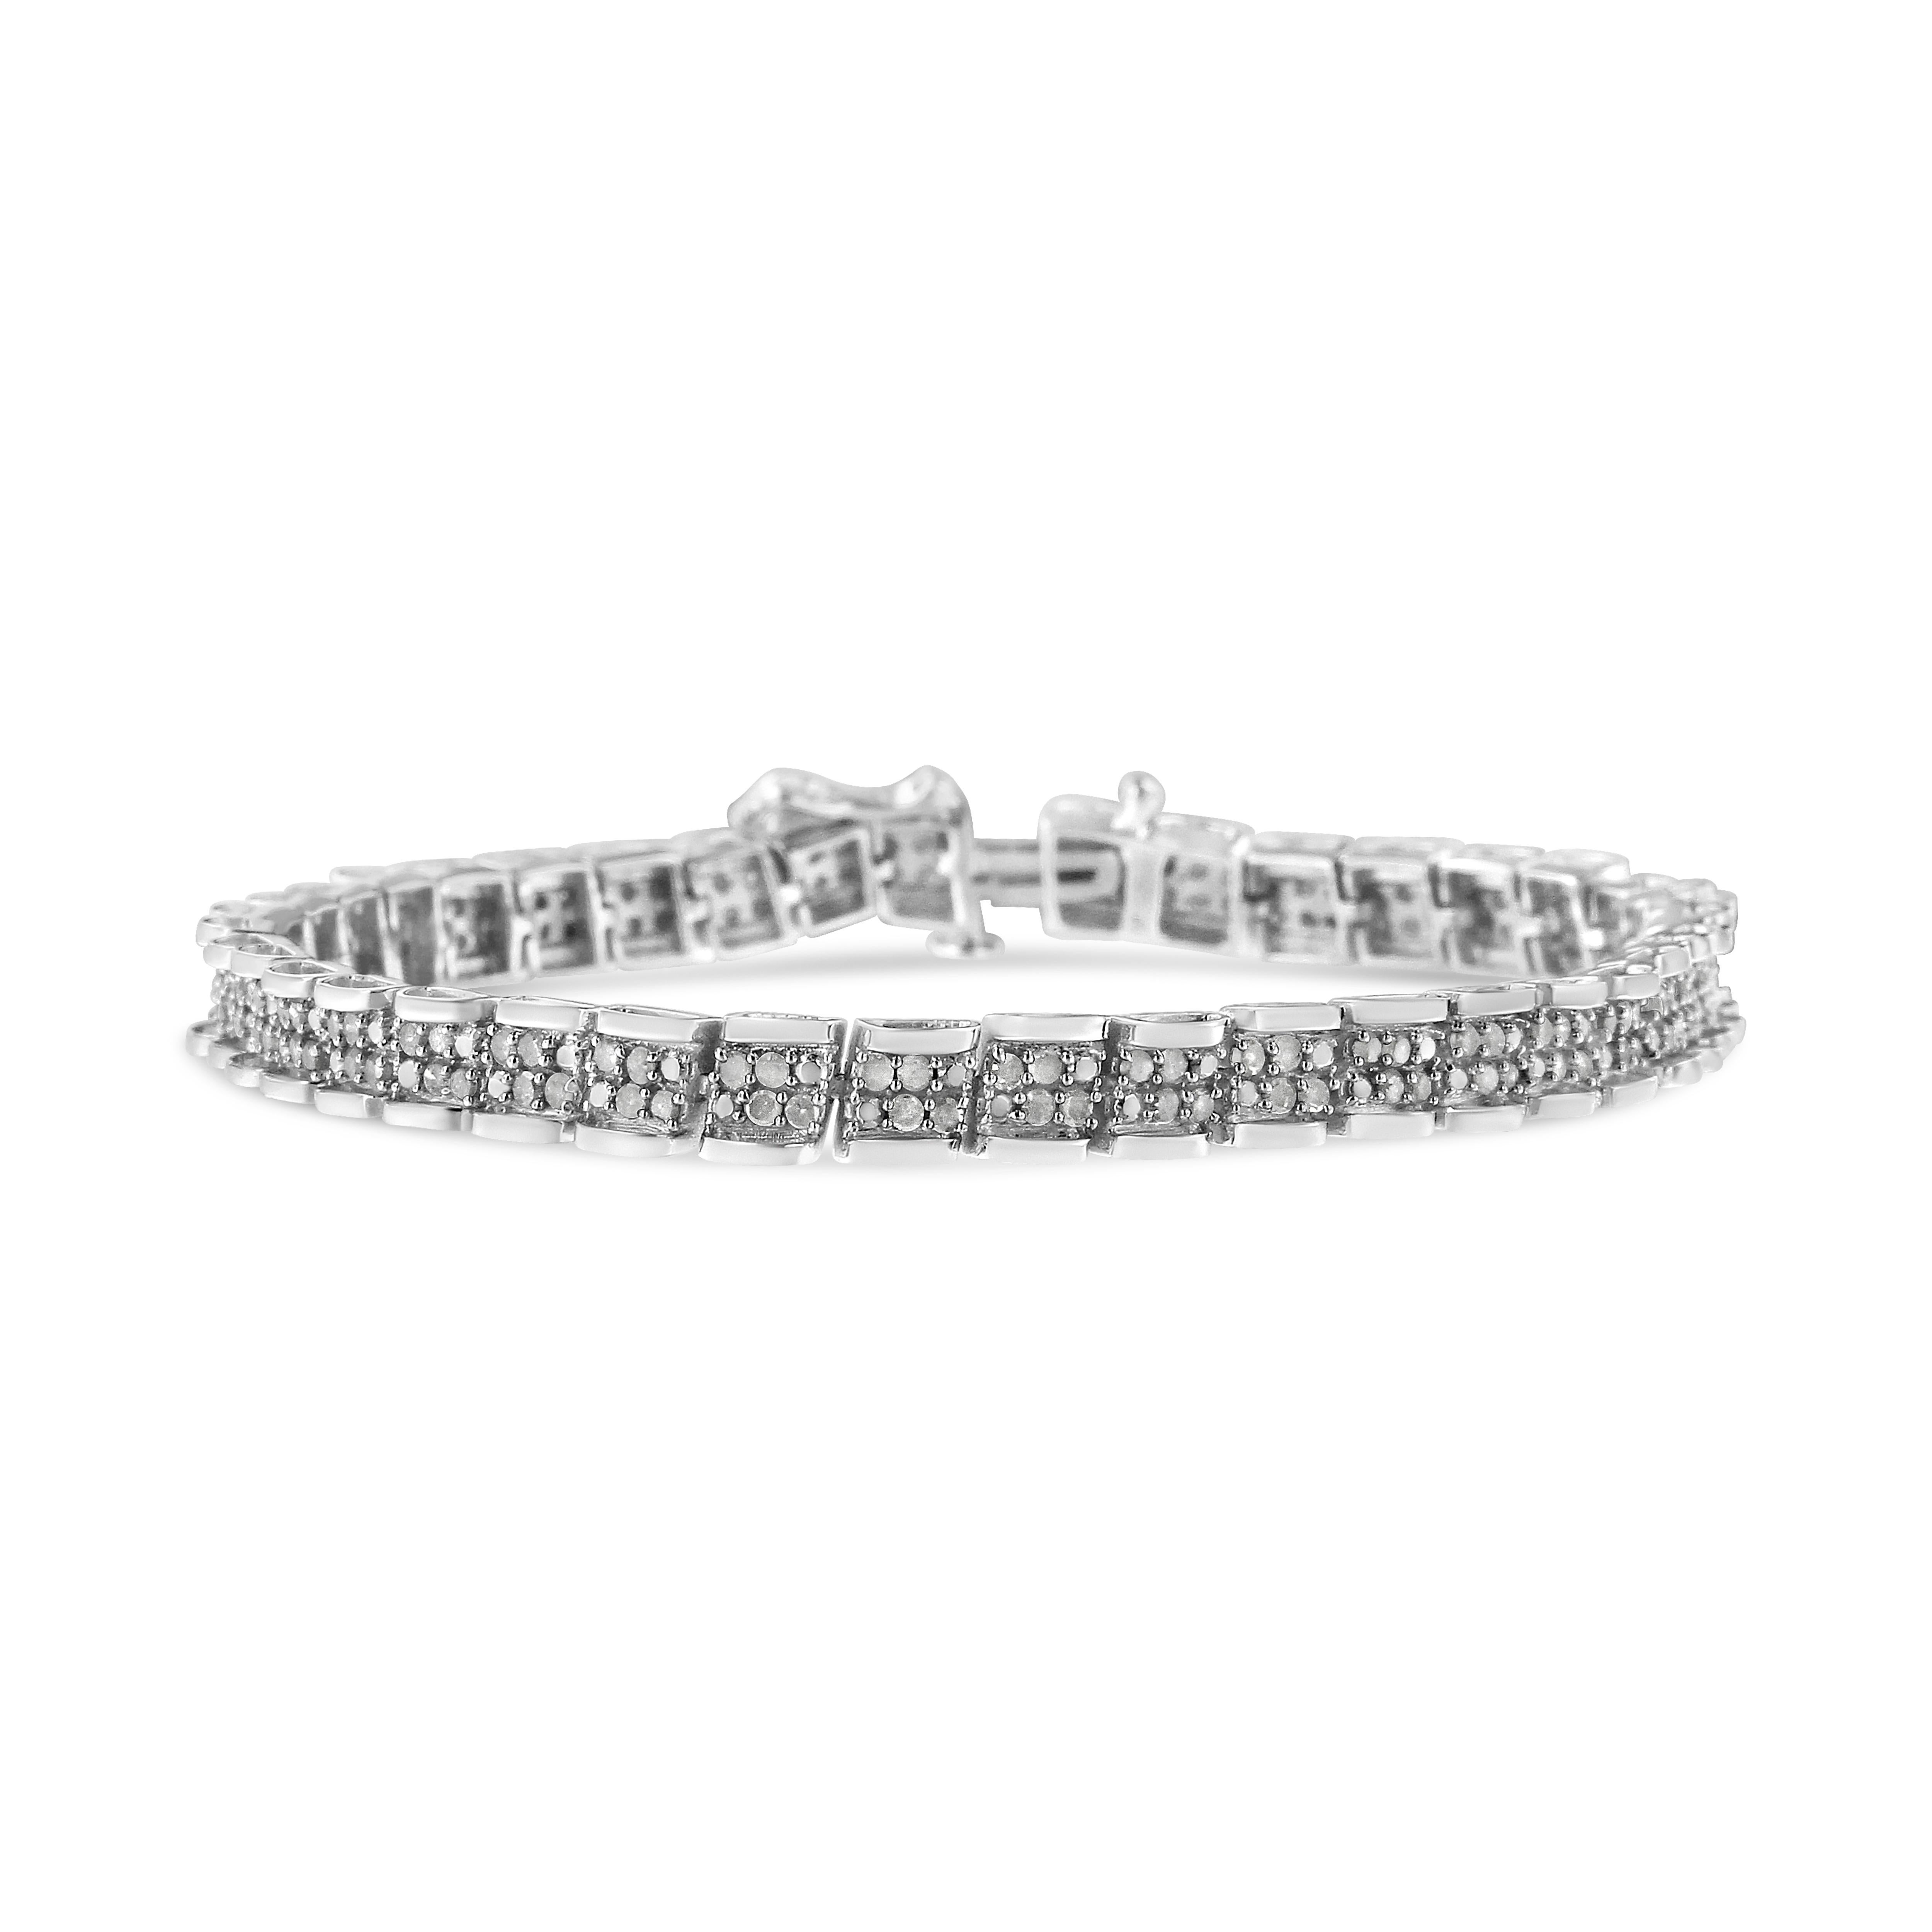 Habillez toutes vos tenues avec ce fabuleux bracelet à maillons en argent sterling. Ce bracelet est orné de 160 diamants de qualité promo taillés en rose, qui se situent au plus bas de l'échelle de couleur et de qualité des diamants. Les diamants de